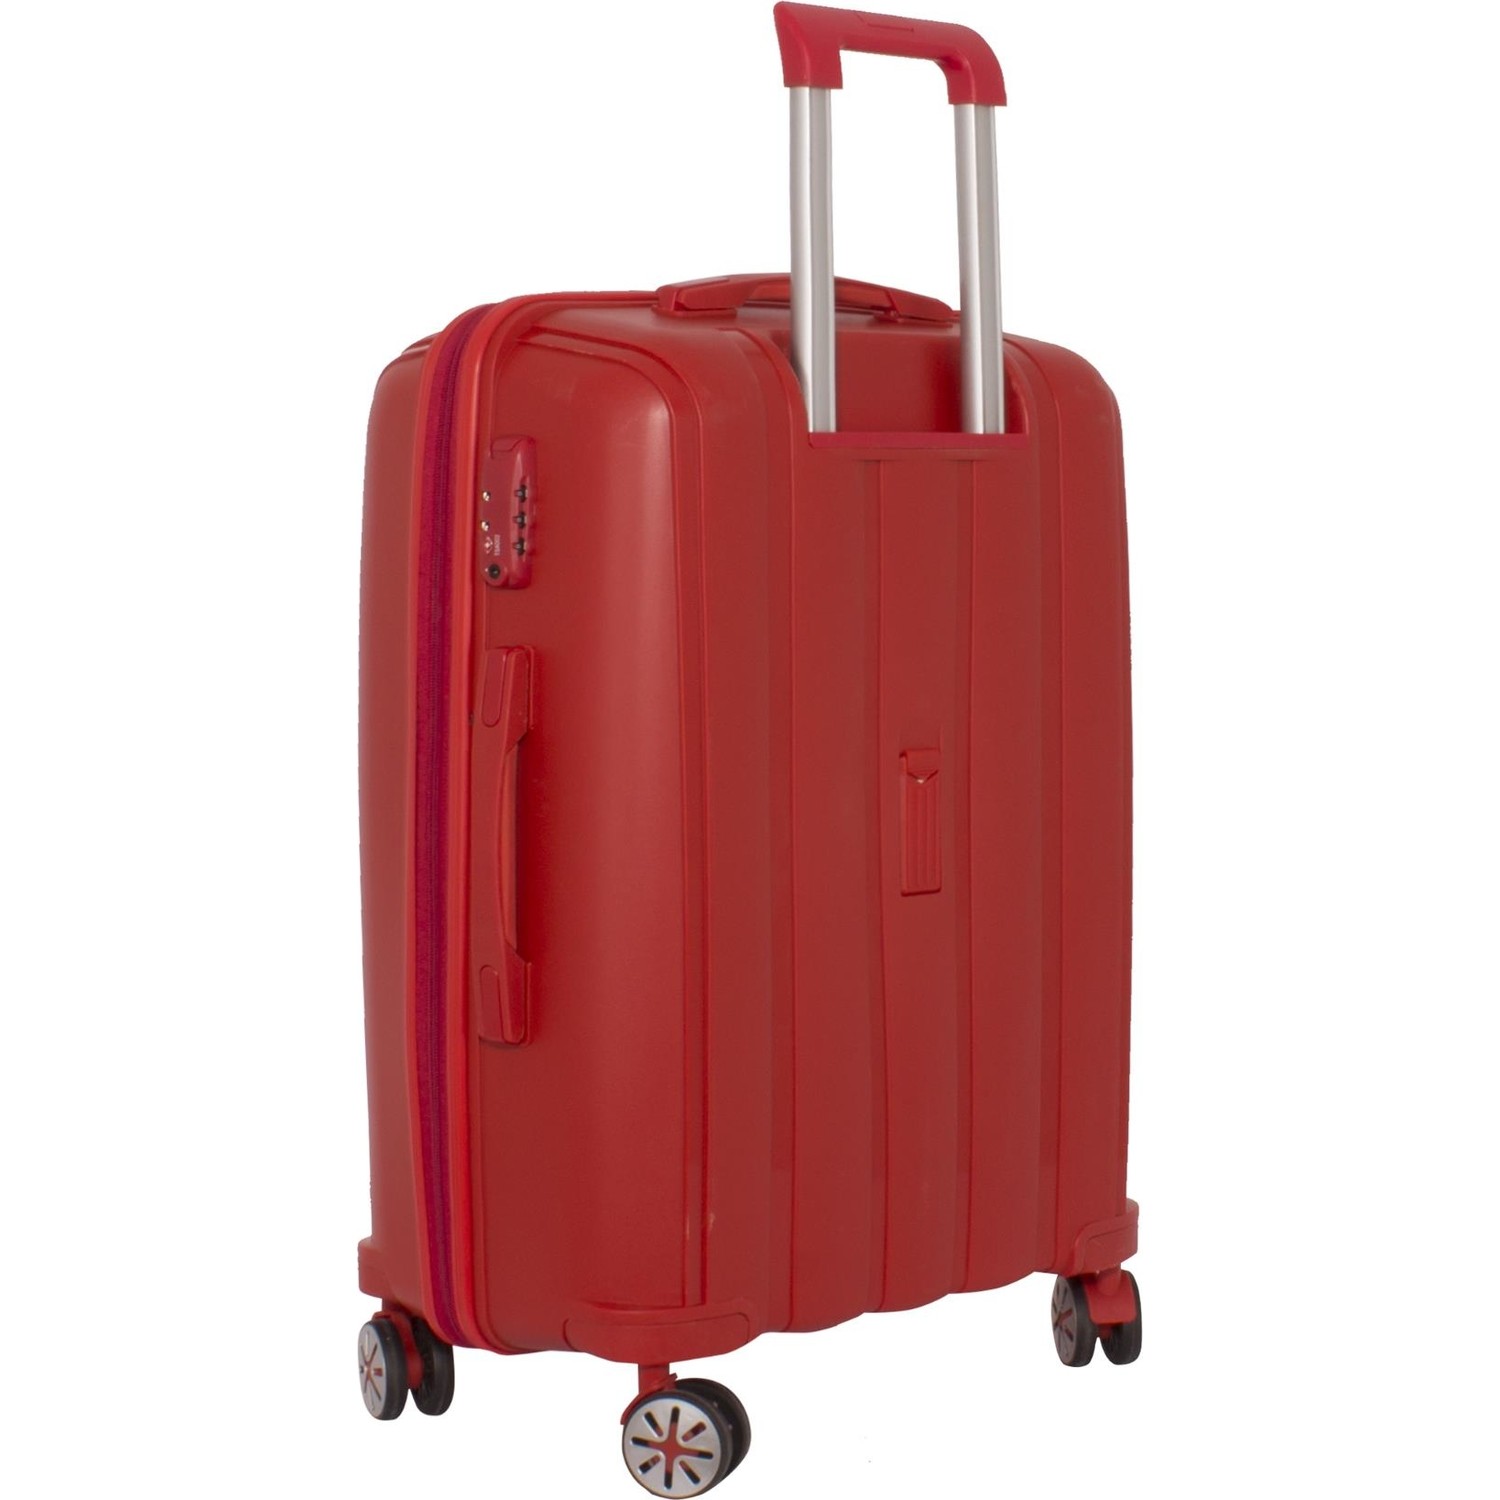 Маленький чемодан для ручьной клади из полипропилена MCS V305 S RED! Для 8-10 кг! - 4